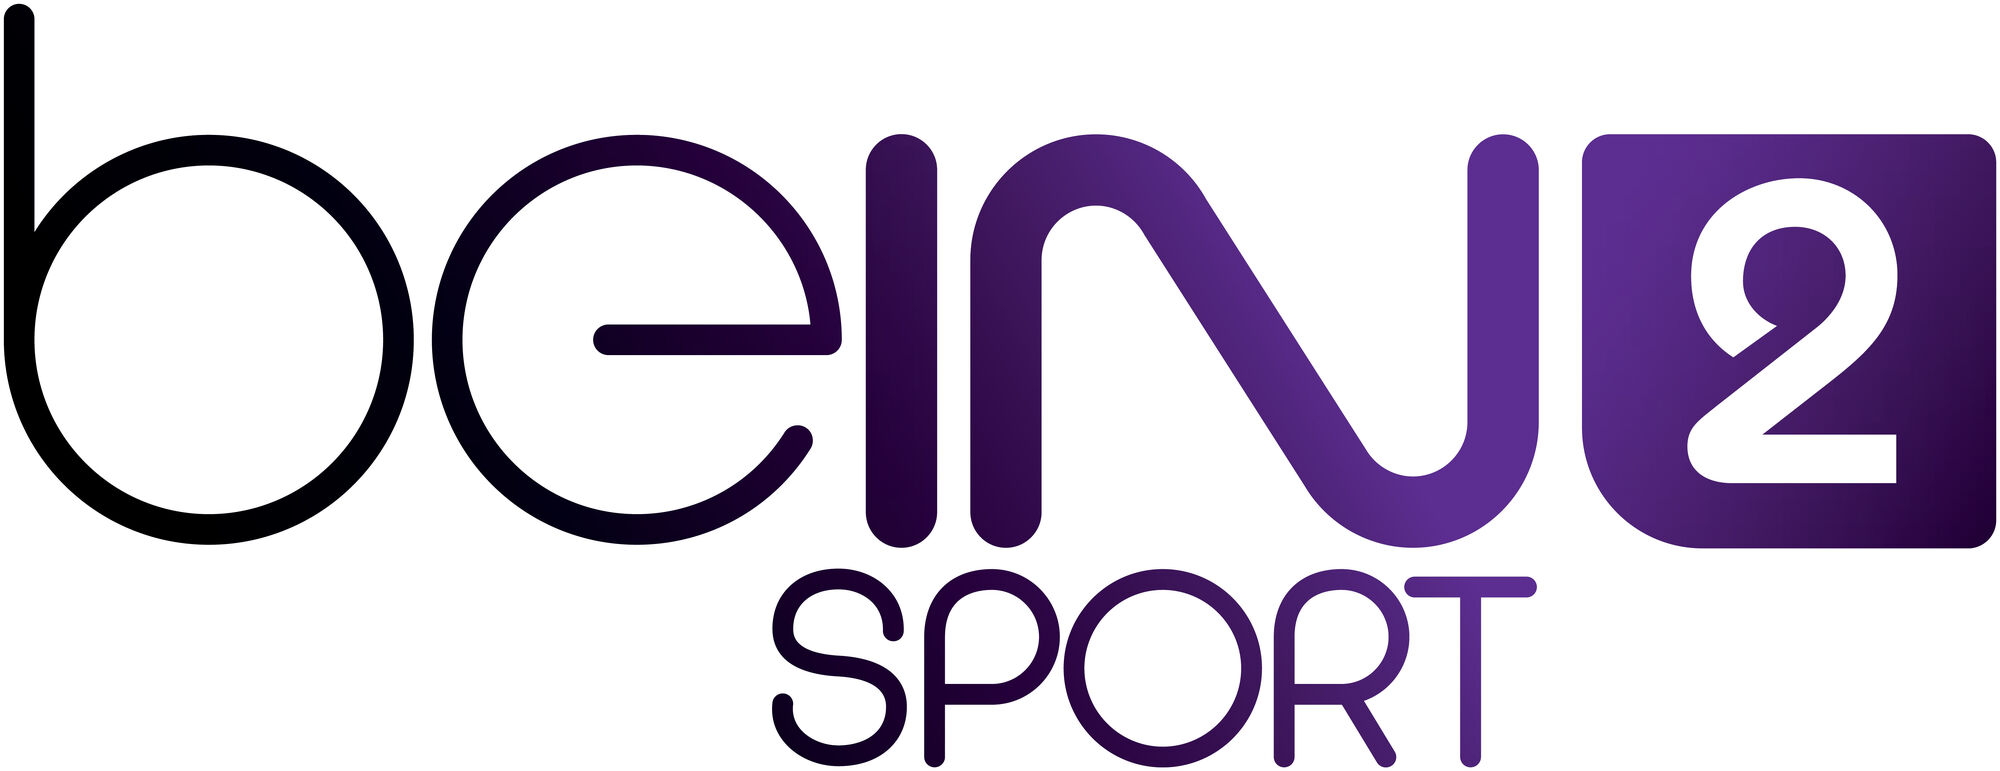 Bein sport 3. Bein Sport logo. Bein Sport TV логотип вектор. Bein. Bein Sport 1hd logo.